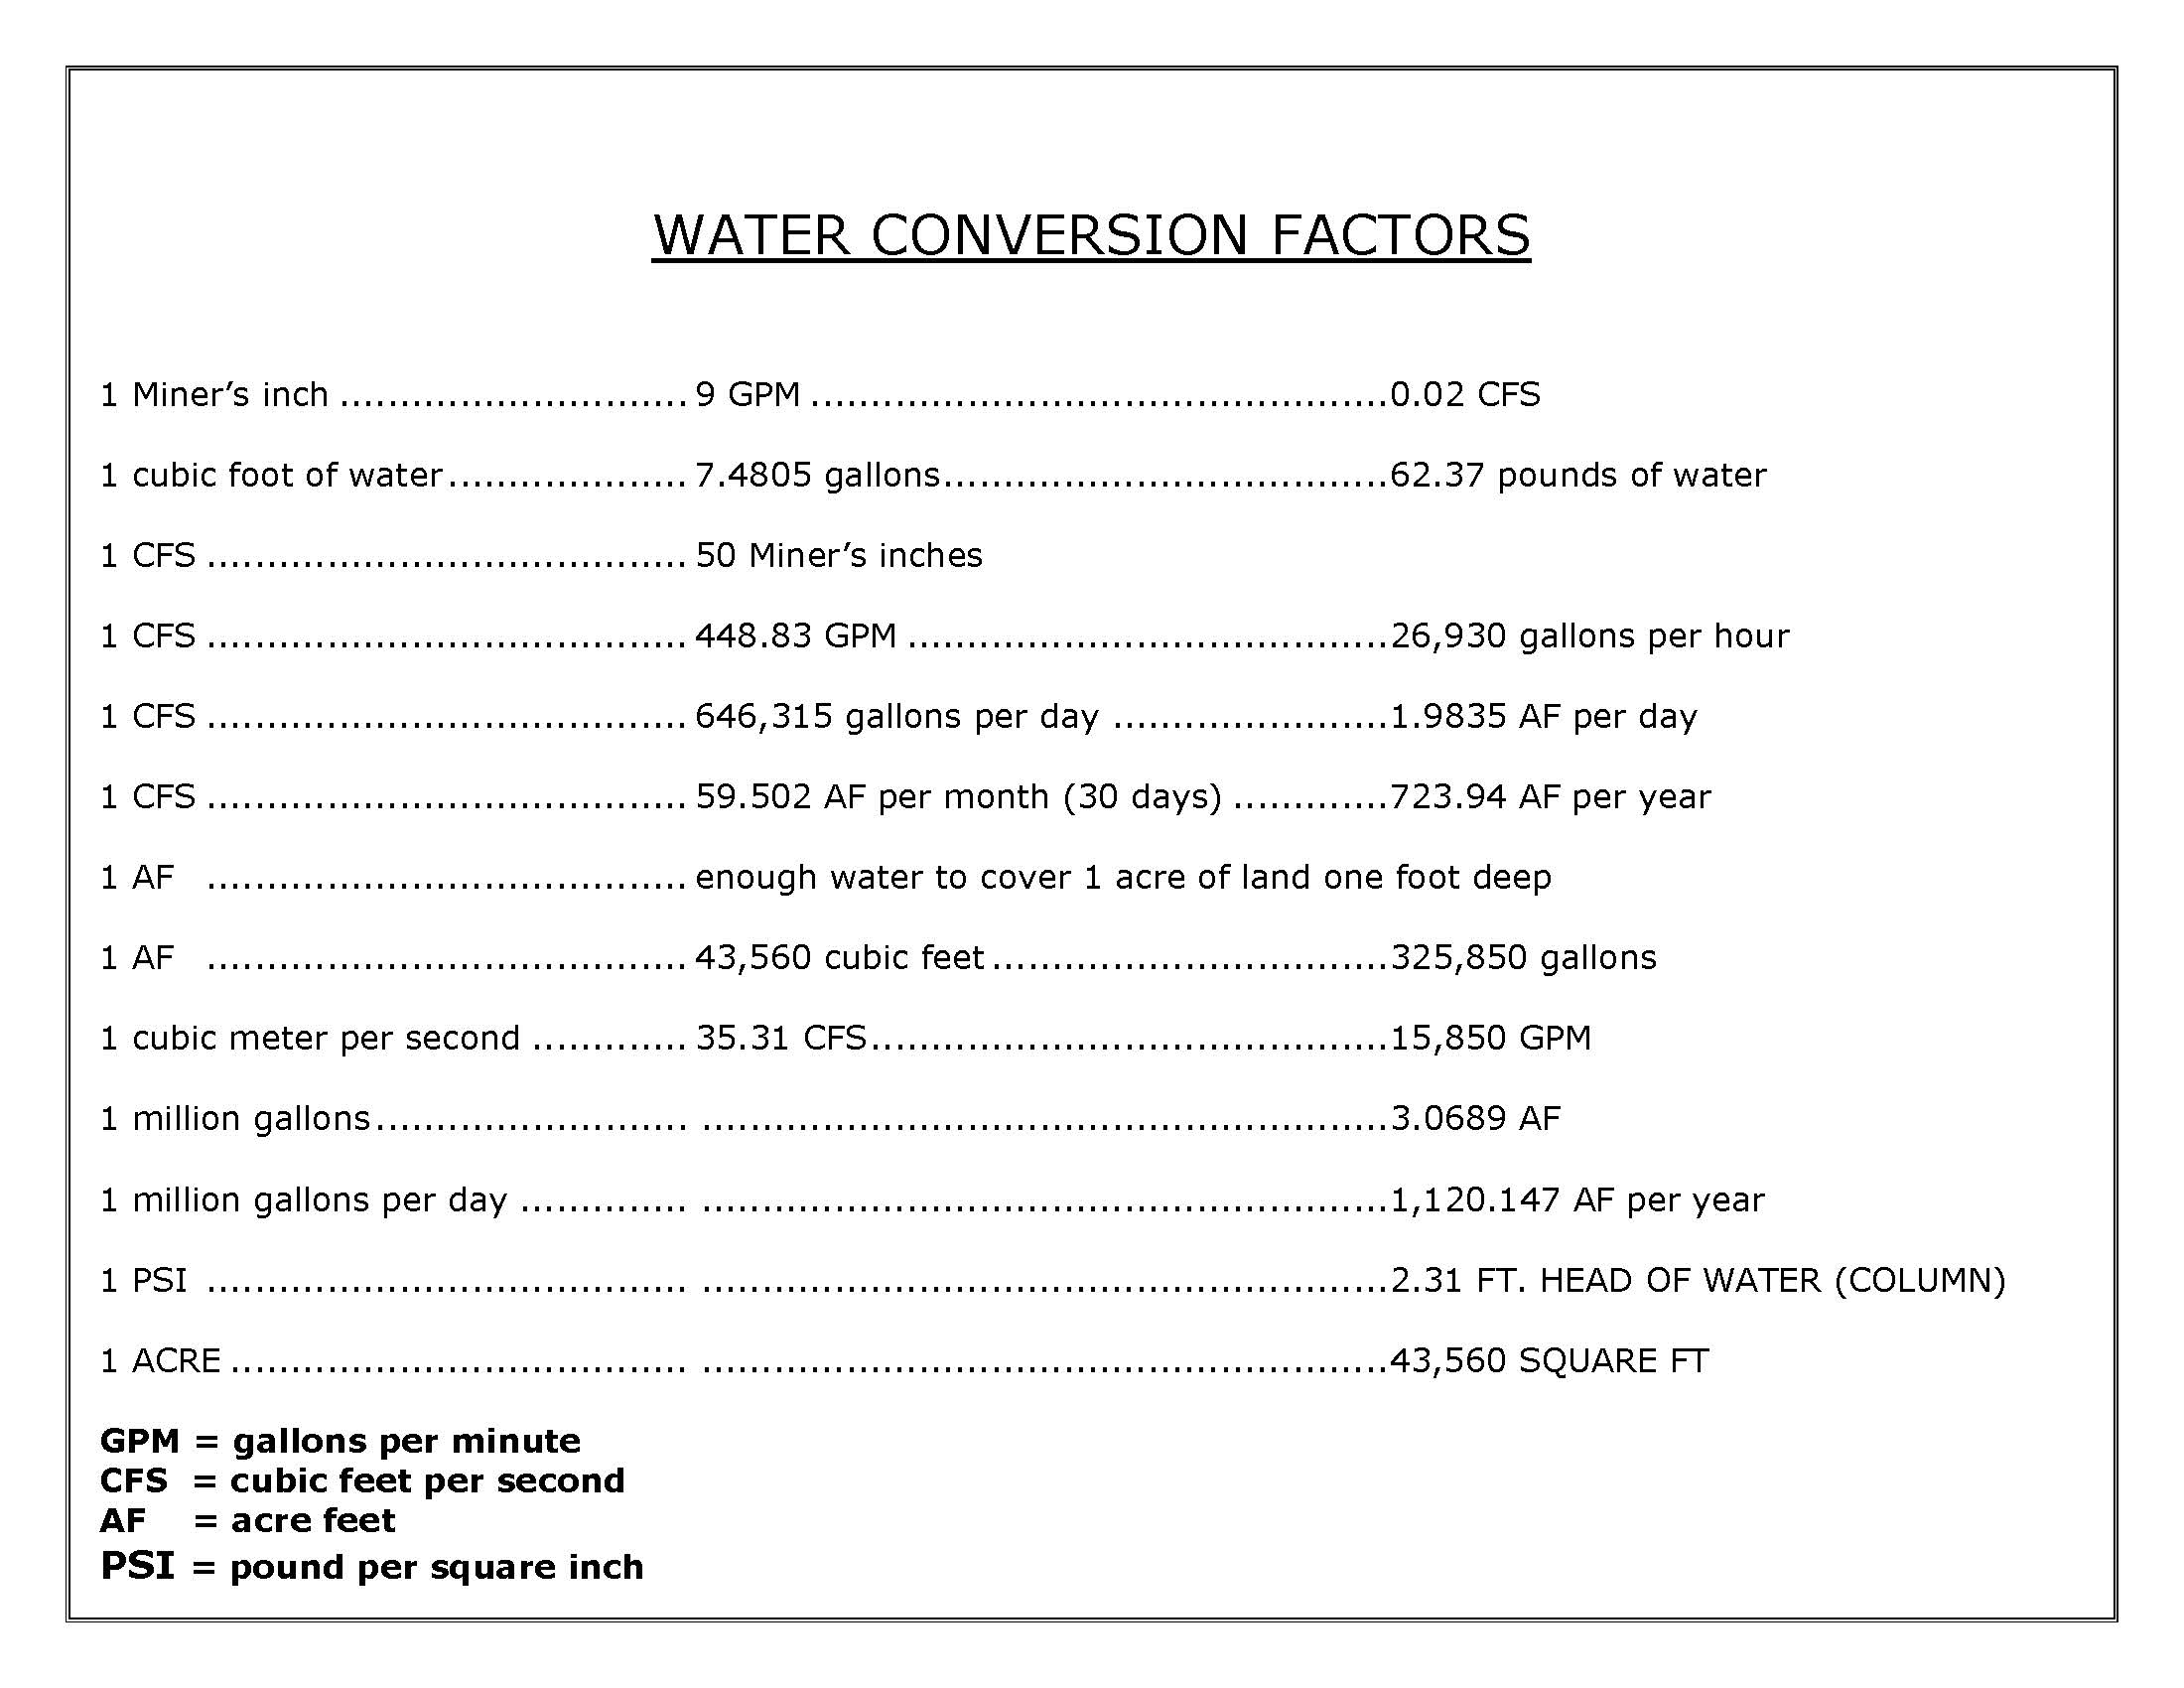 water-conversion-factors-mchugh-bromley-pllc-idaho-water-law-attorneys